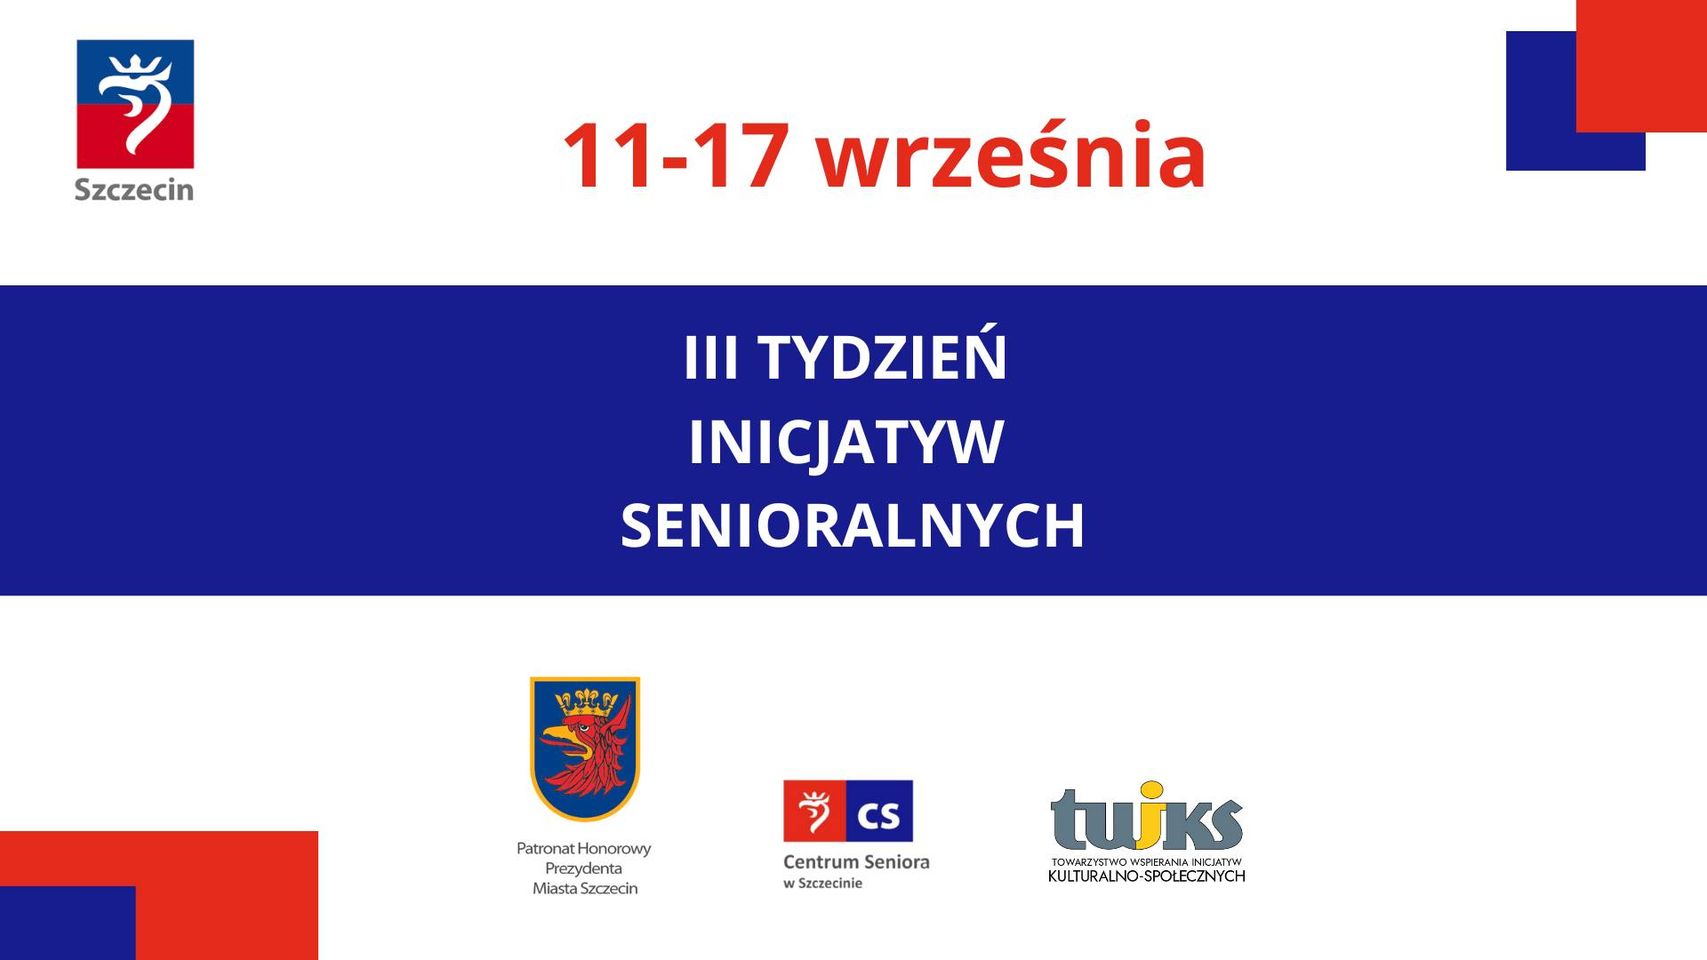 III Tydzień Inicjatyw Senioralnych w Szczecinie